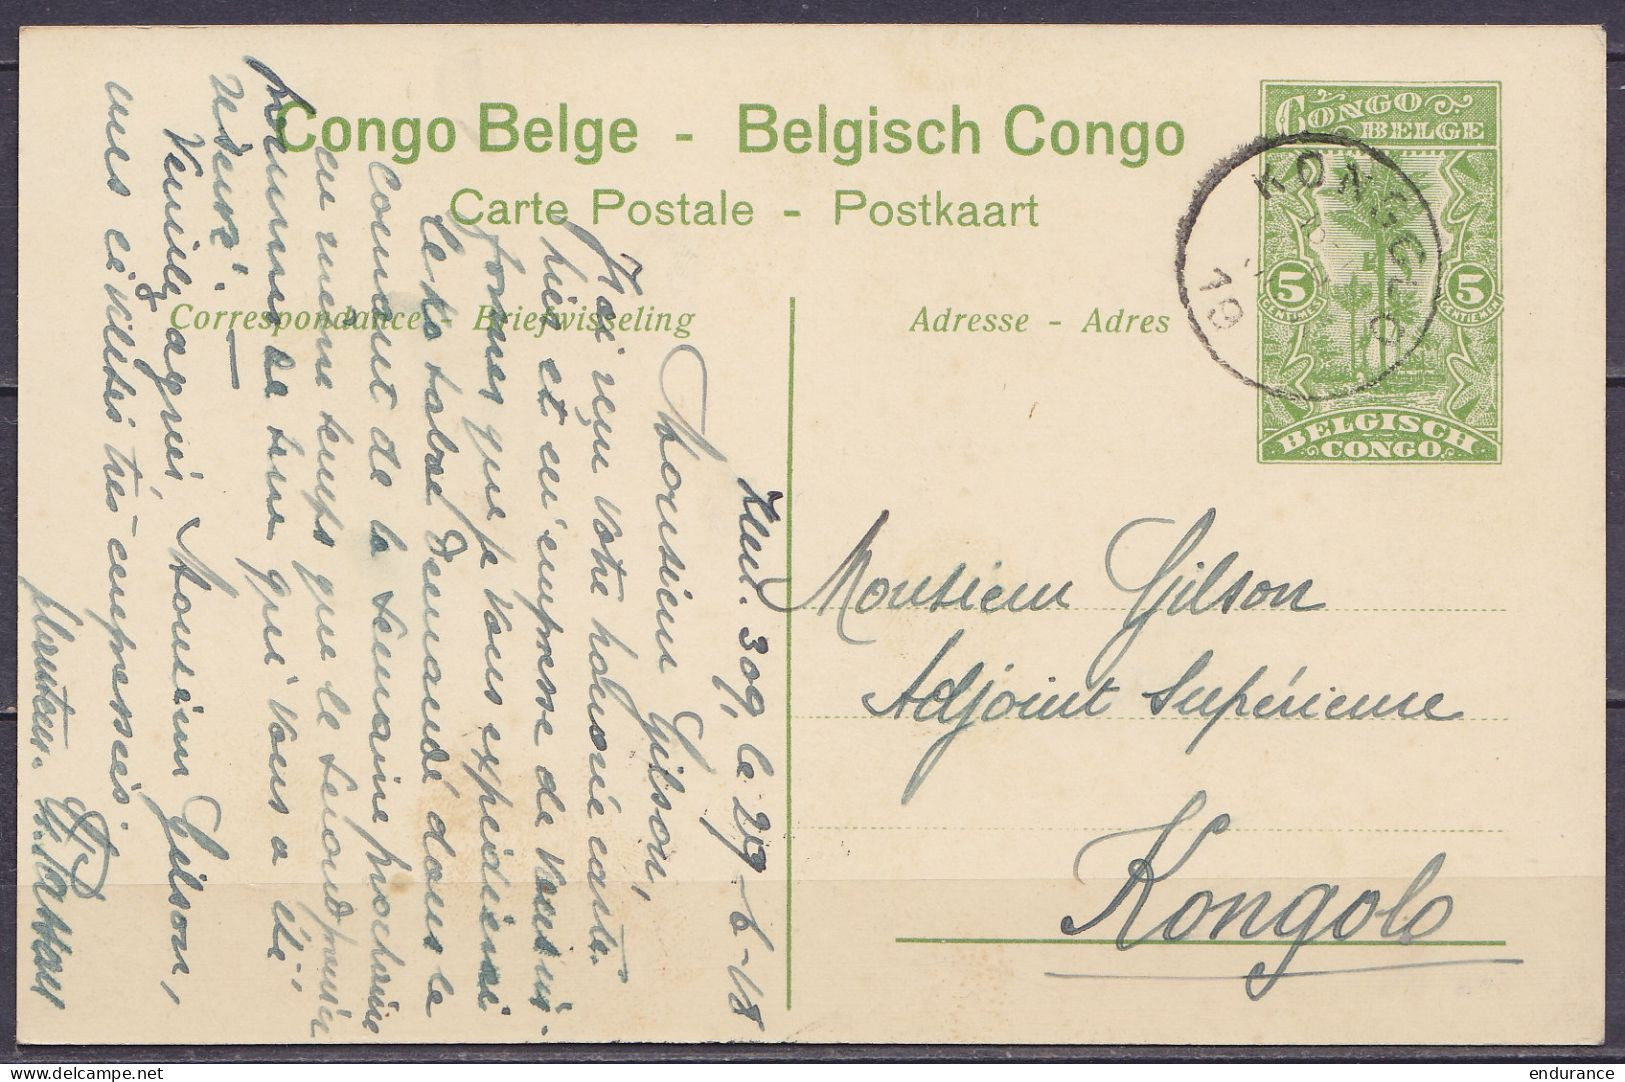 Congo Belge - EP CP 5c Vert "La Ruzizi" D'un Planteur Càd KONGOLO /29 JUIN 1918 Pour Adjoint Supérieur André Gilson E/V  - Interi Postali